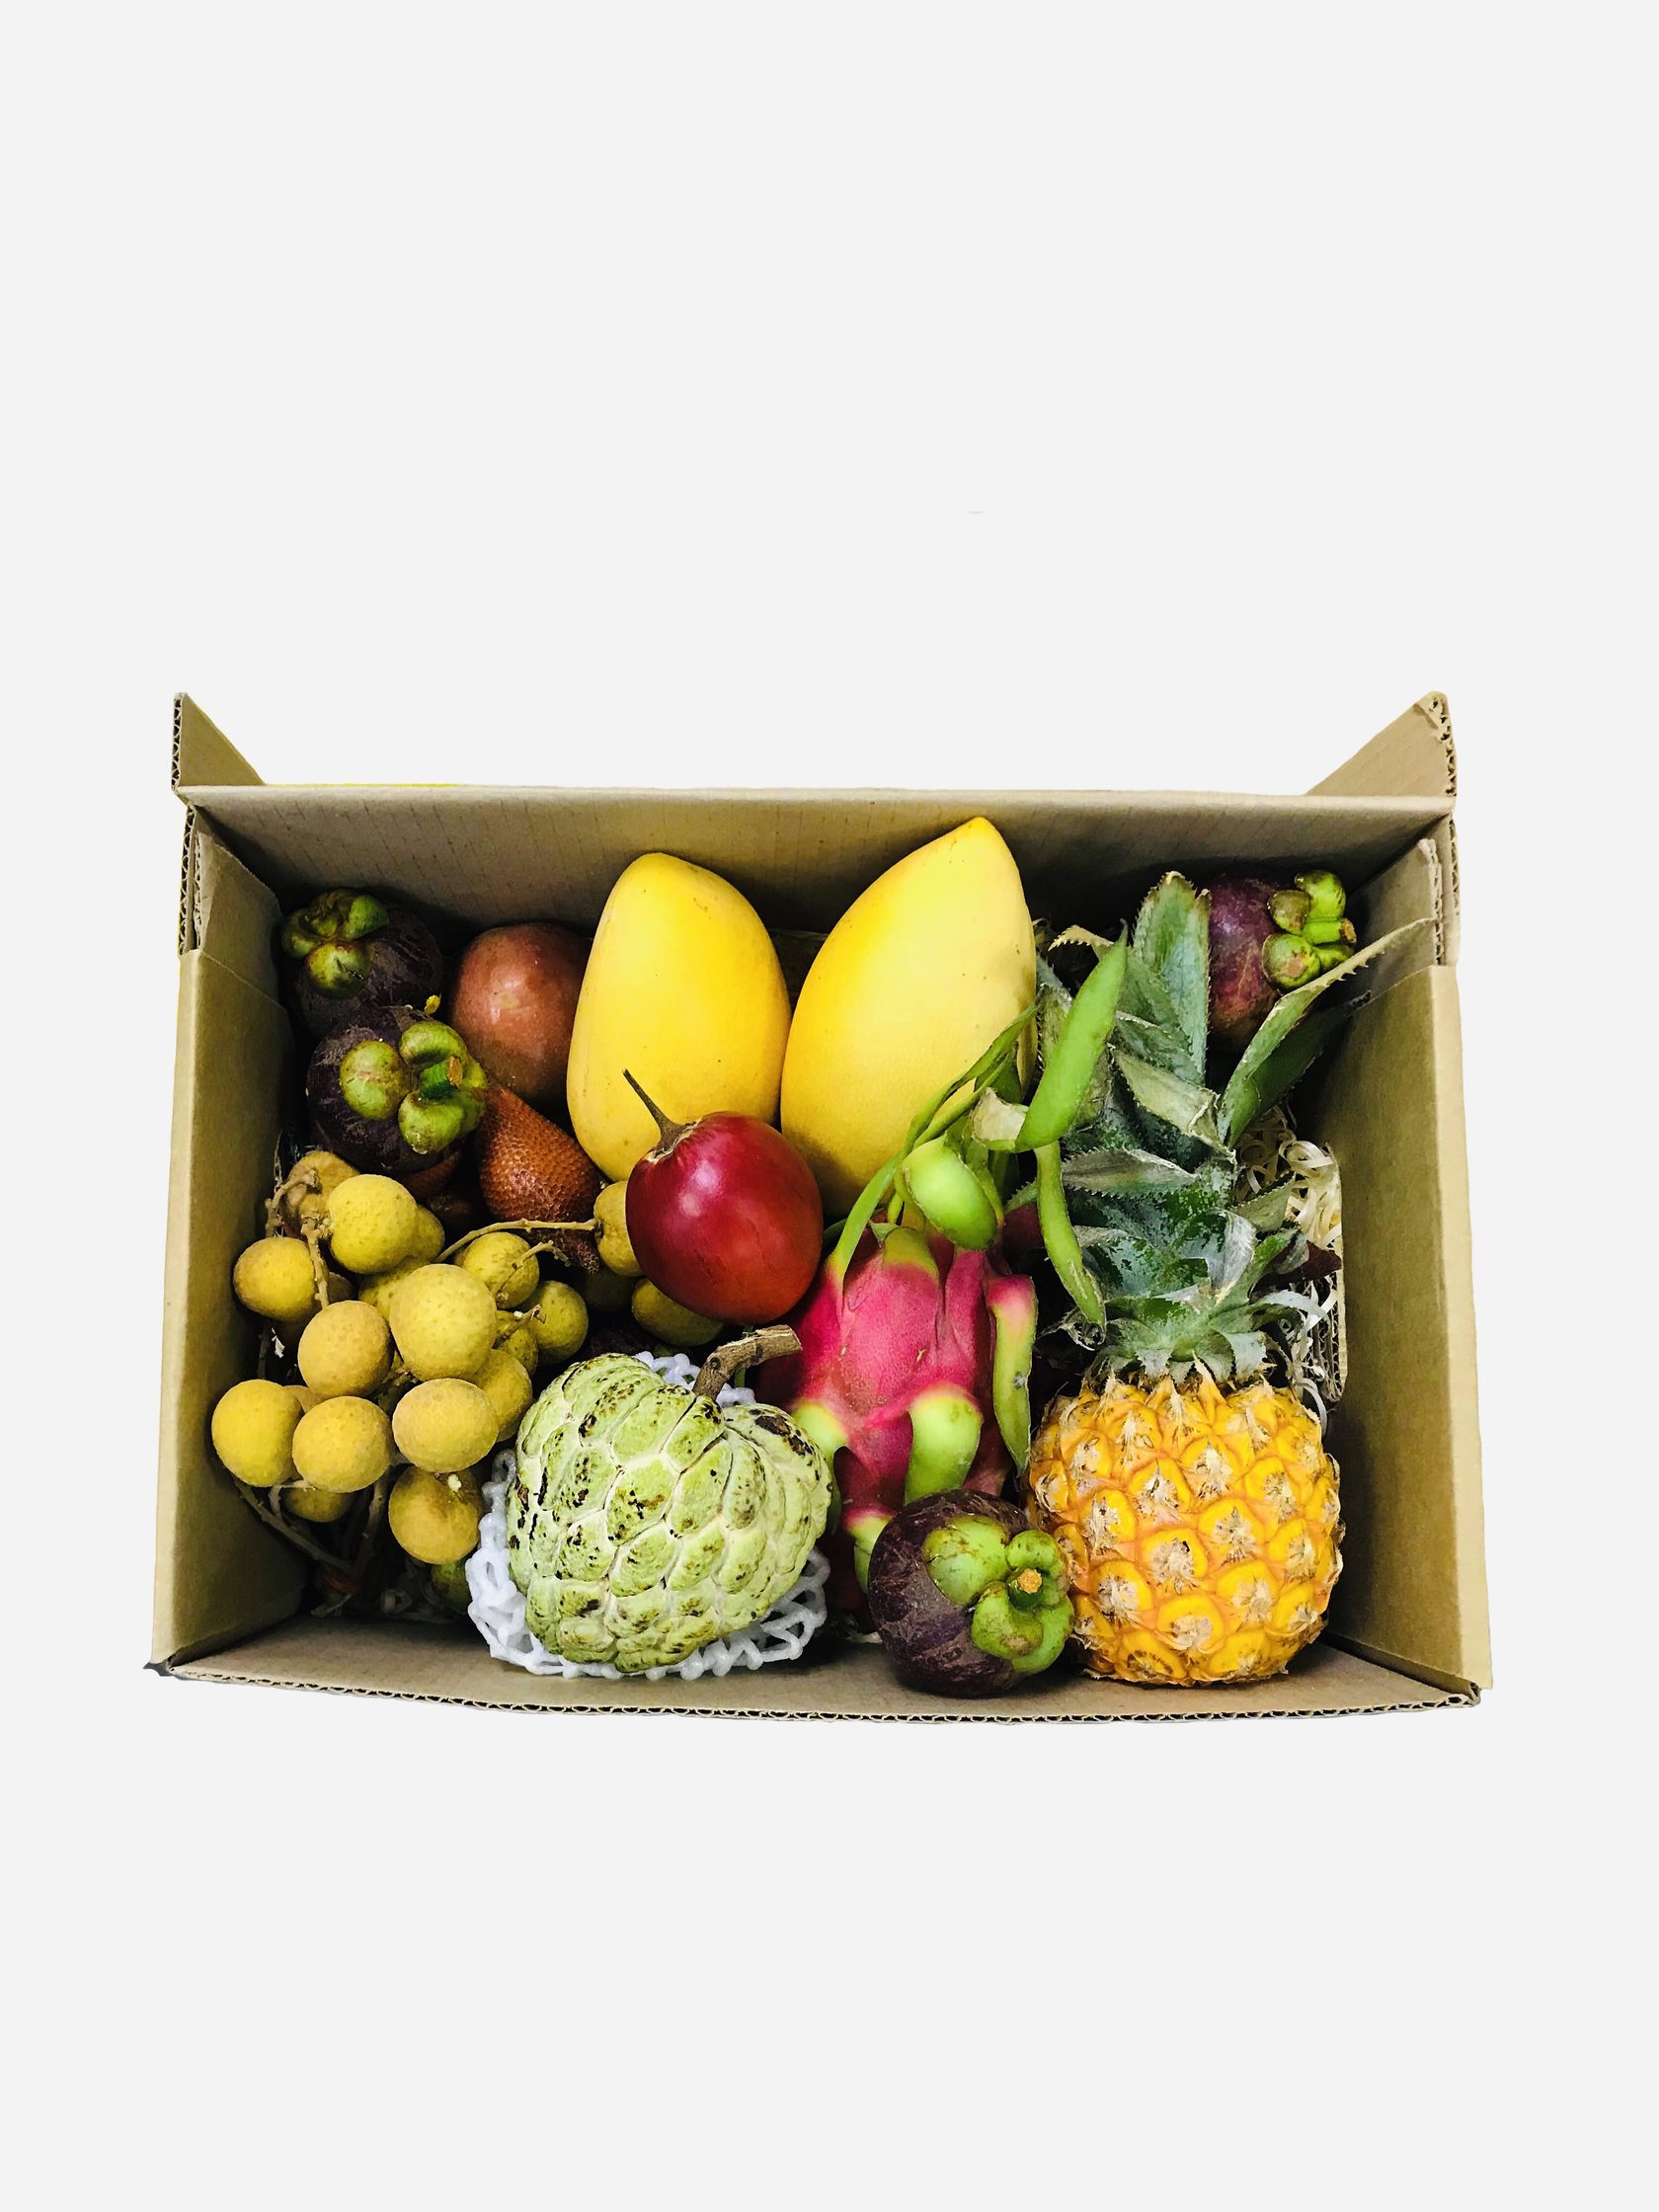 Фрукты в подарок с доставкой. Коробка экзотических фруктов. Экзотические фрукты в коробке. Подарочная коробка с фруктами. Набор из фруктов.